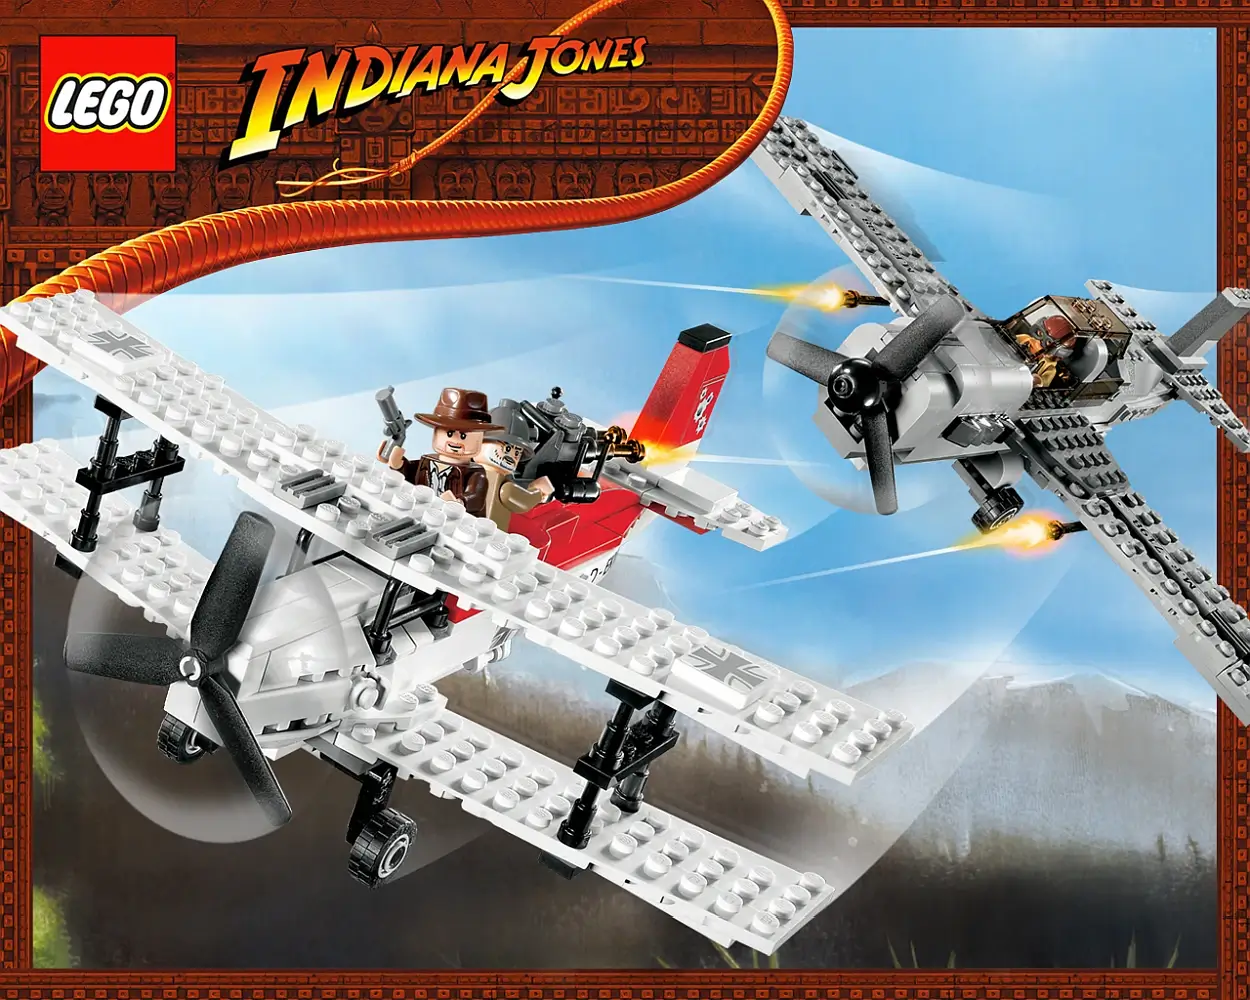 Pudełko zestawu 7198 z serii Indiana Jones – bitwa samolotów